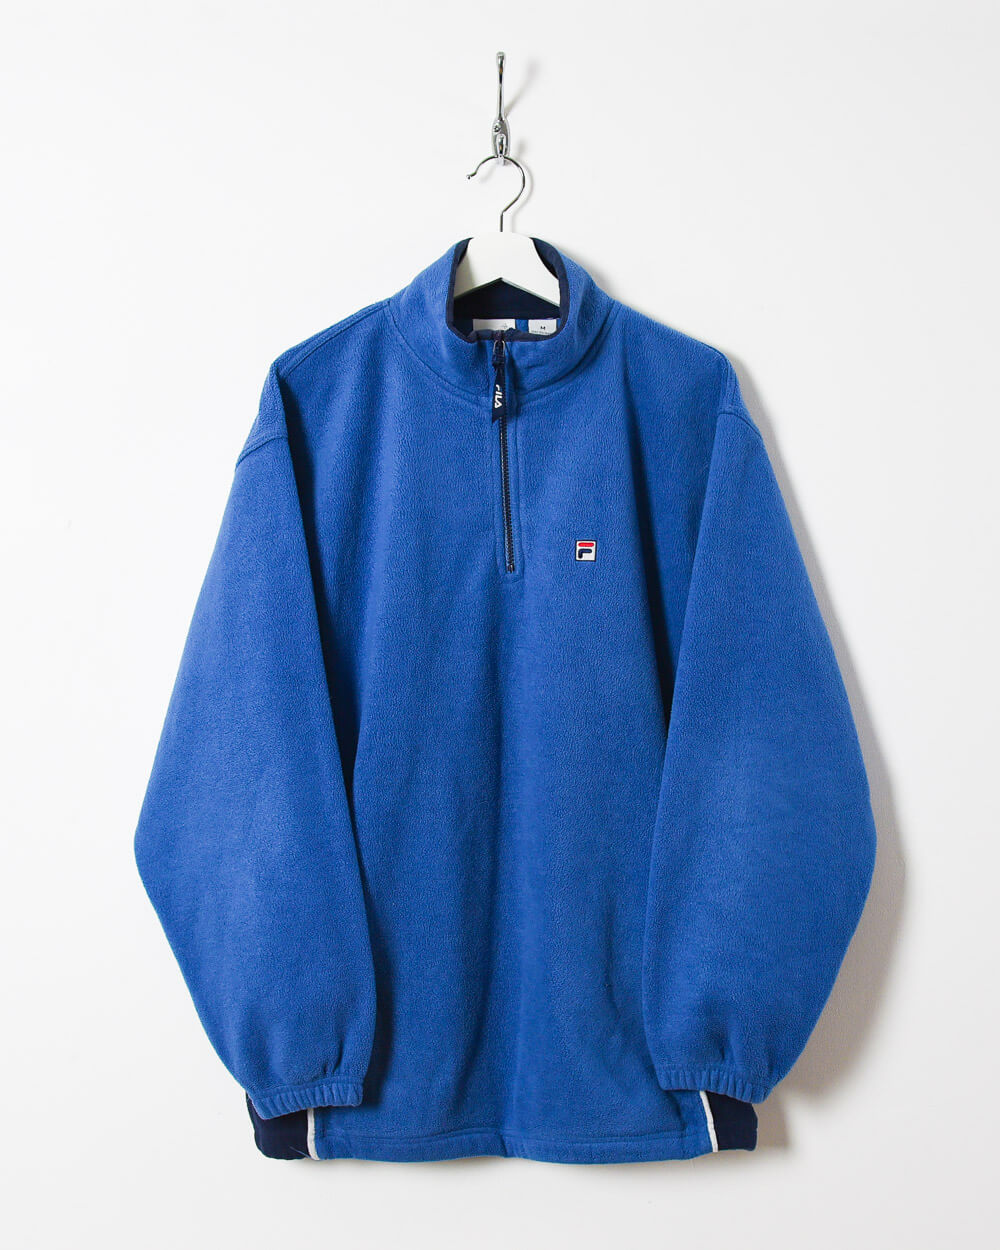 Blue Fila 1/4 Zip Fleece - Large